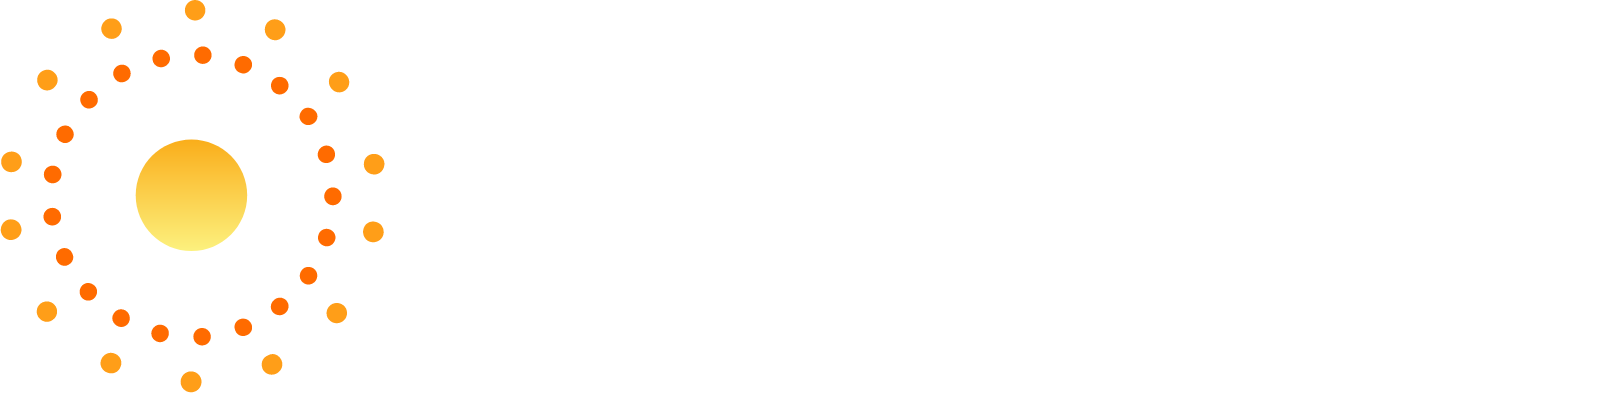 Heliogen logo grand pour les fonds sombres (PNG transparent)